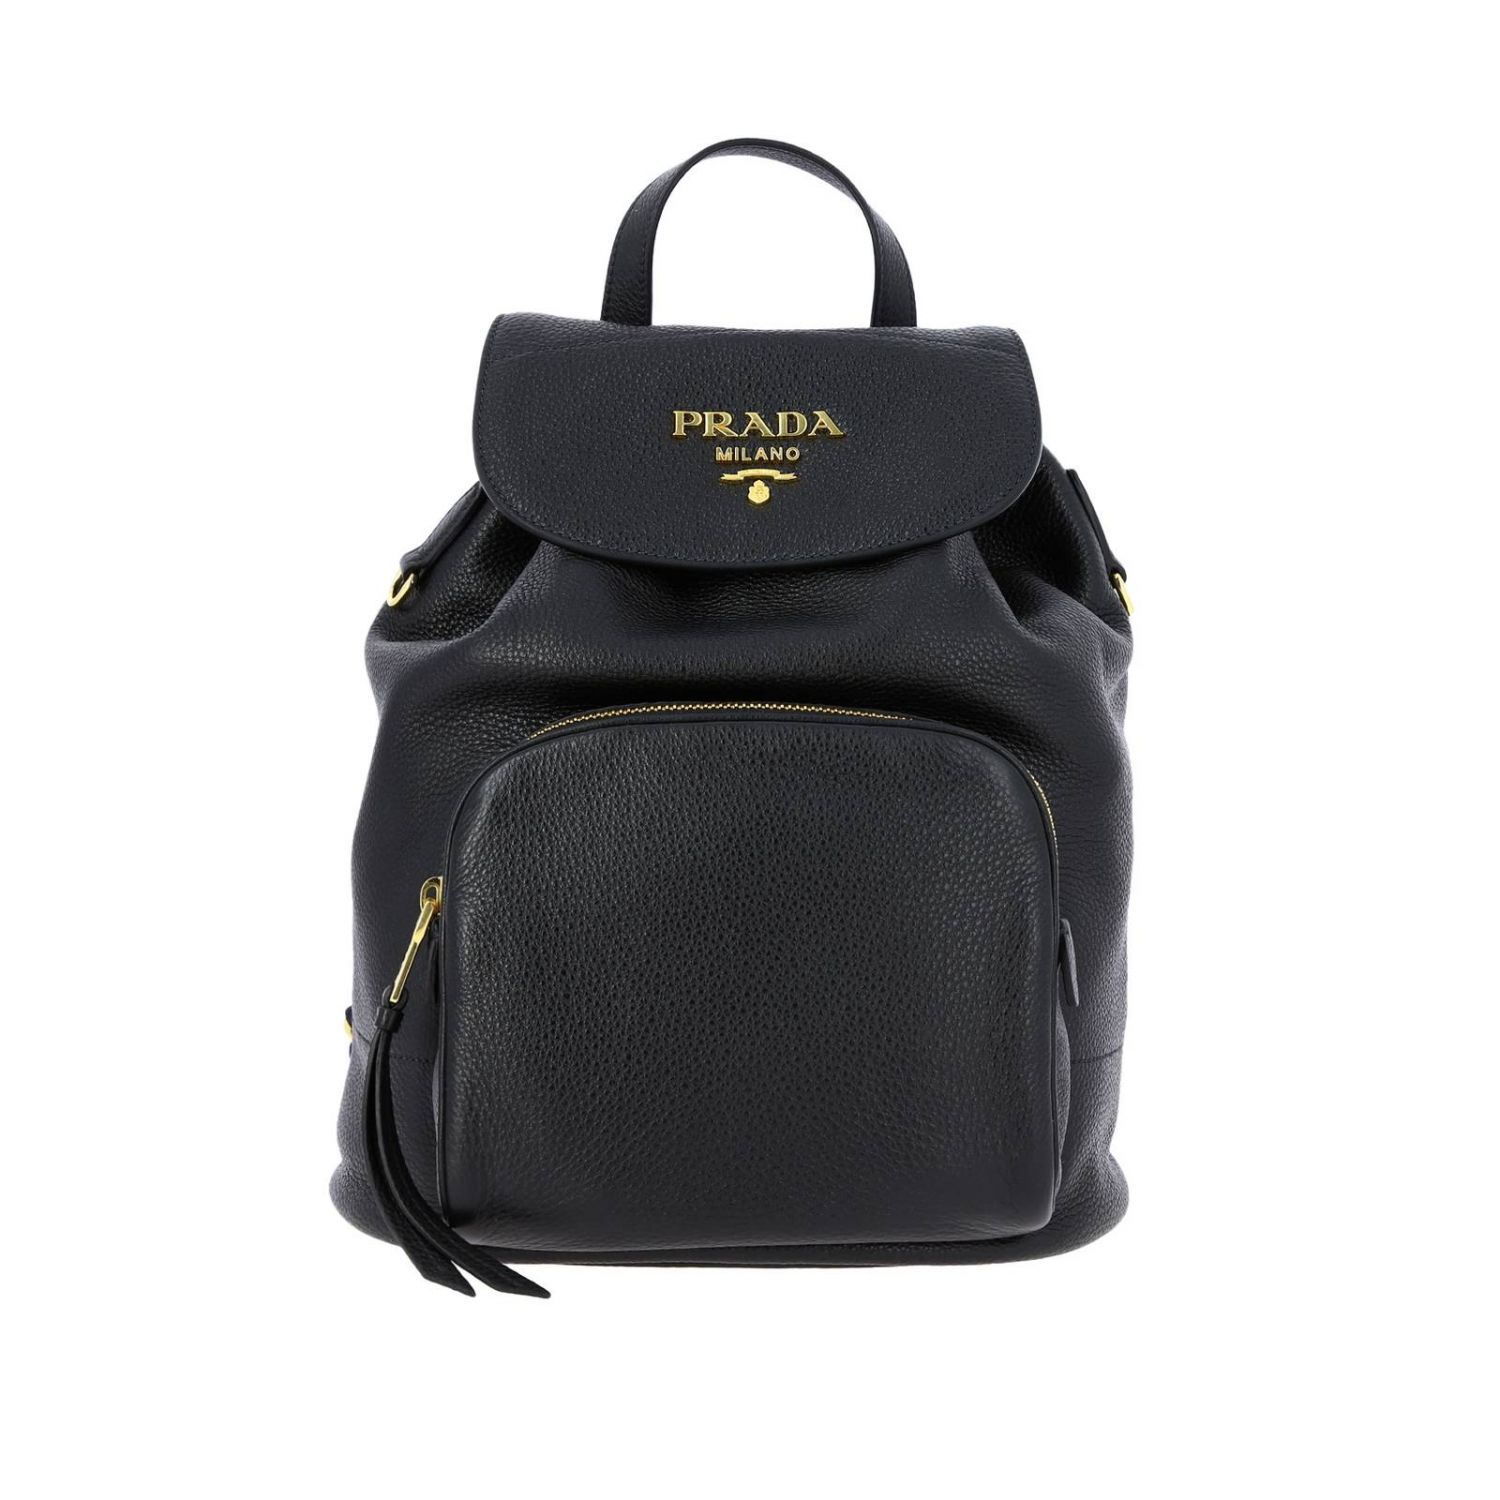 prada black leather backpack